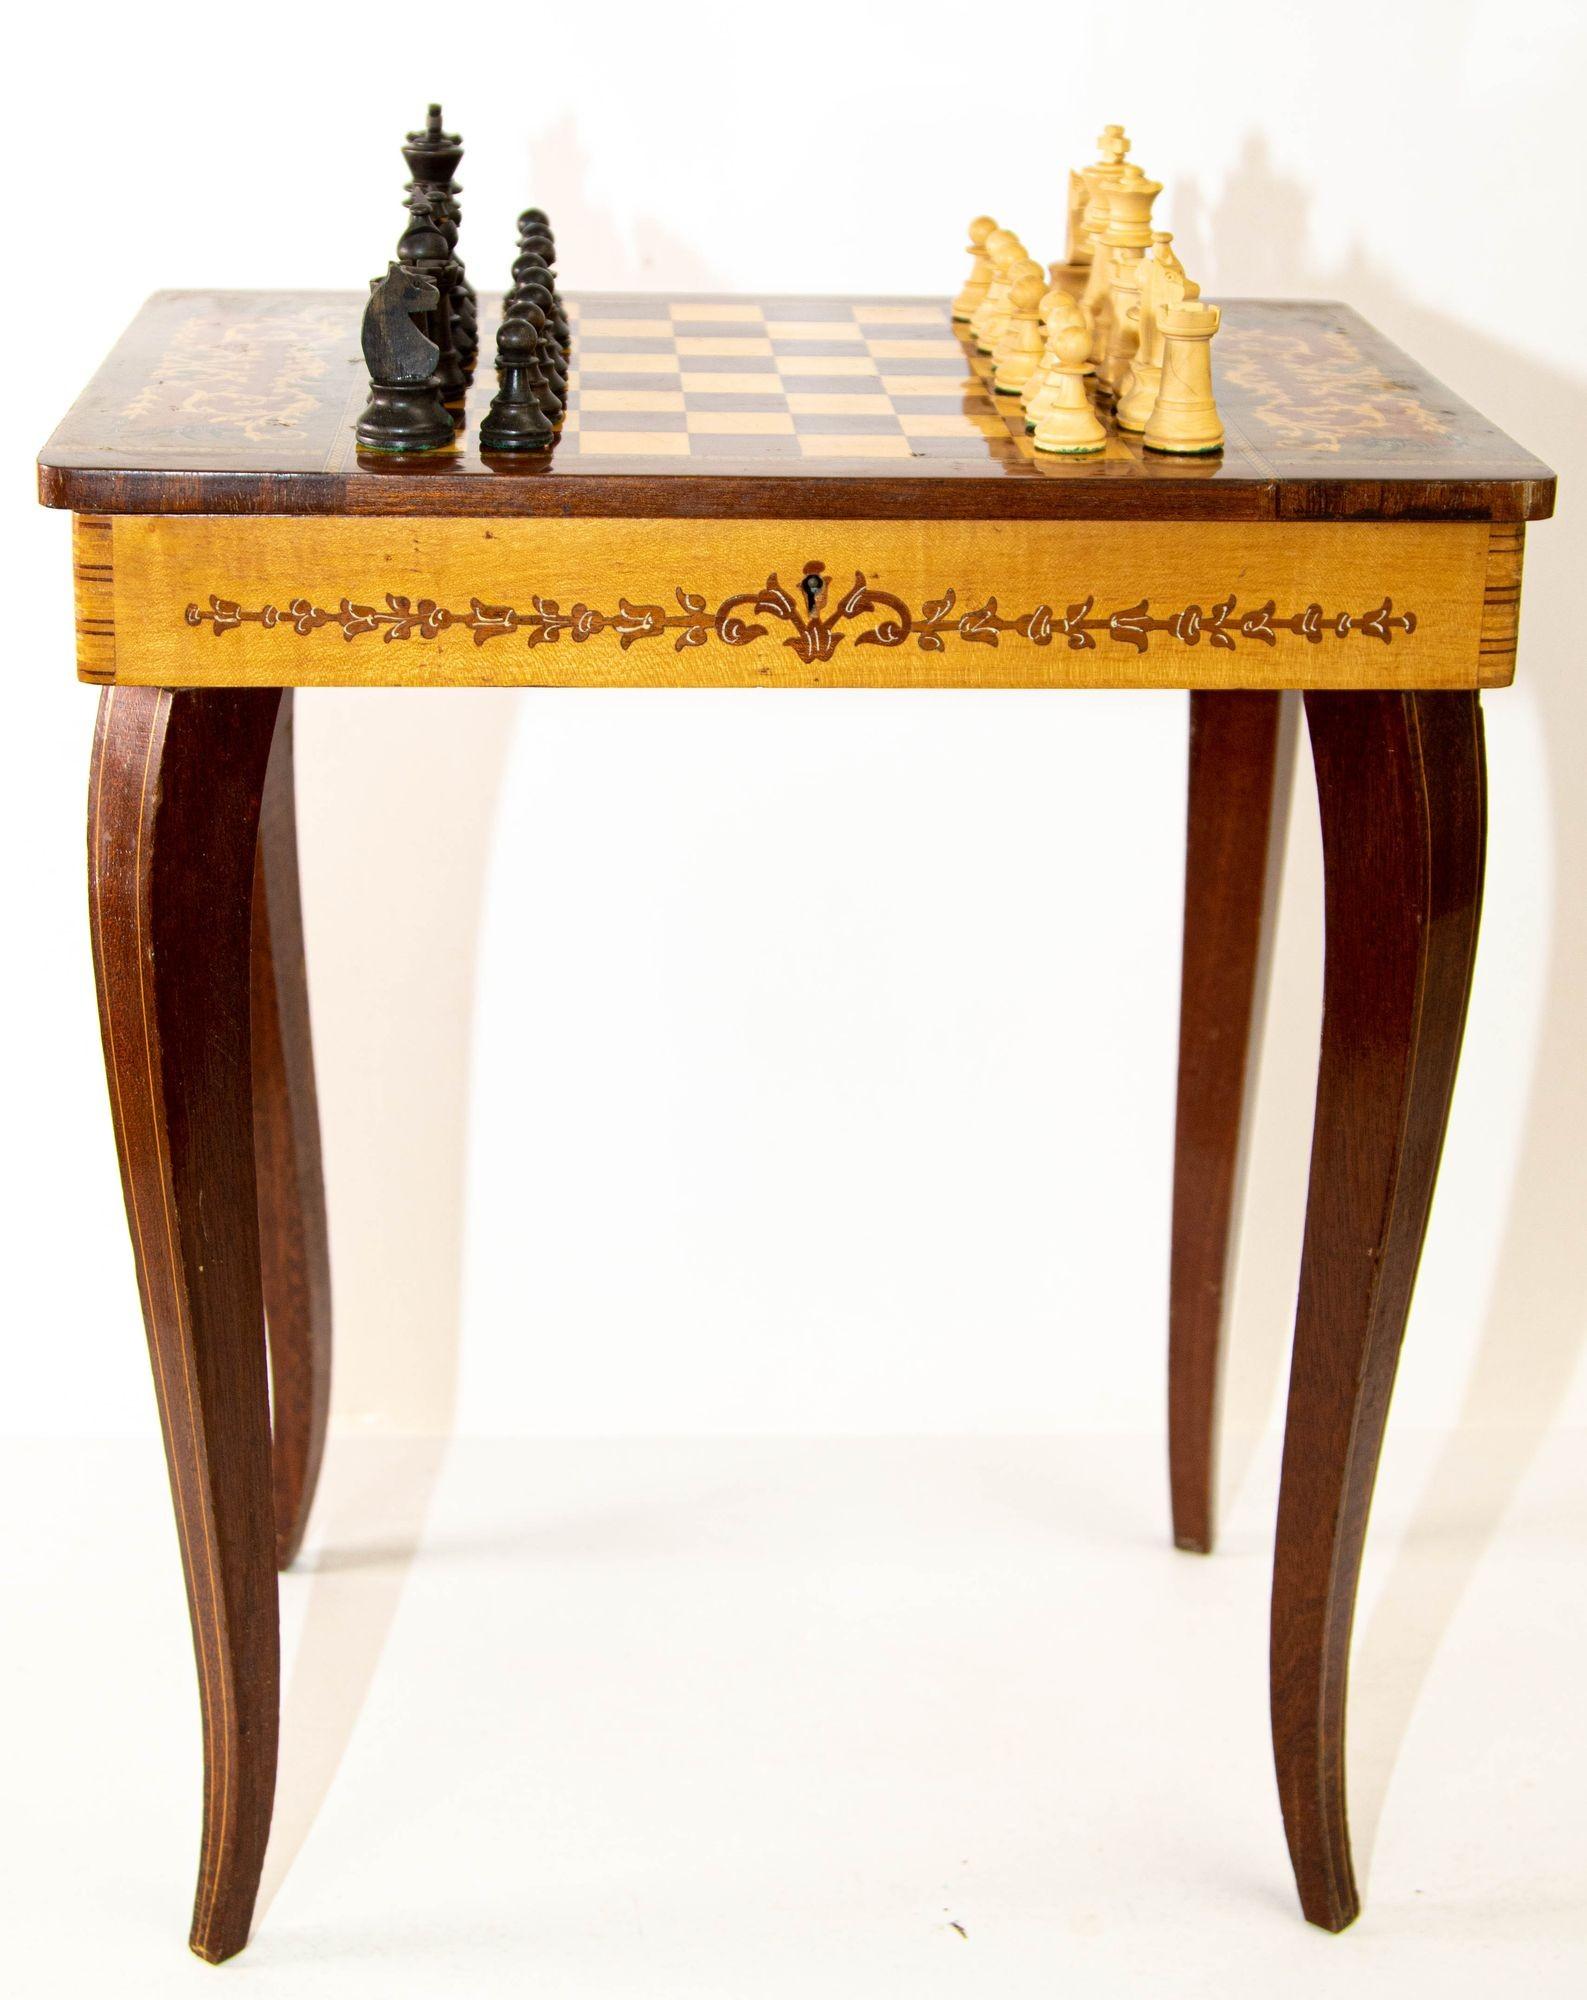 Vintage Italian Rococo Style Satinwood Inlaid Marquetry Music Box Side table, Chess Game Table.
Ein kleiner rechteckiger Beistell- oder Beistelltisch aus Holz im italienischen Rokokostil mit einer wunderschön dekorativen Schachbrettplatte mit